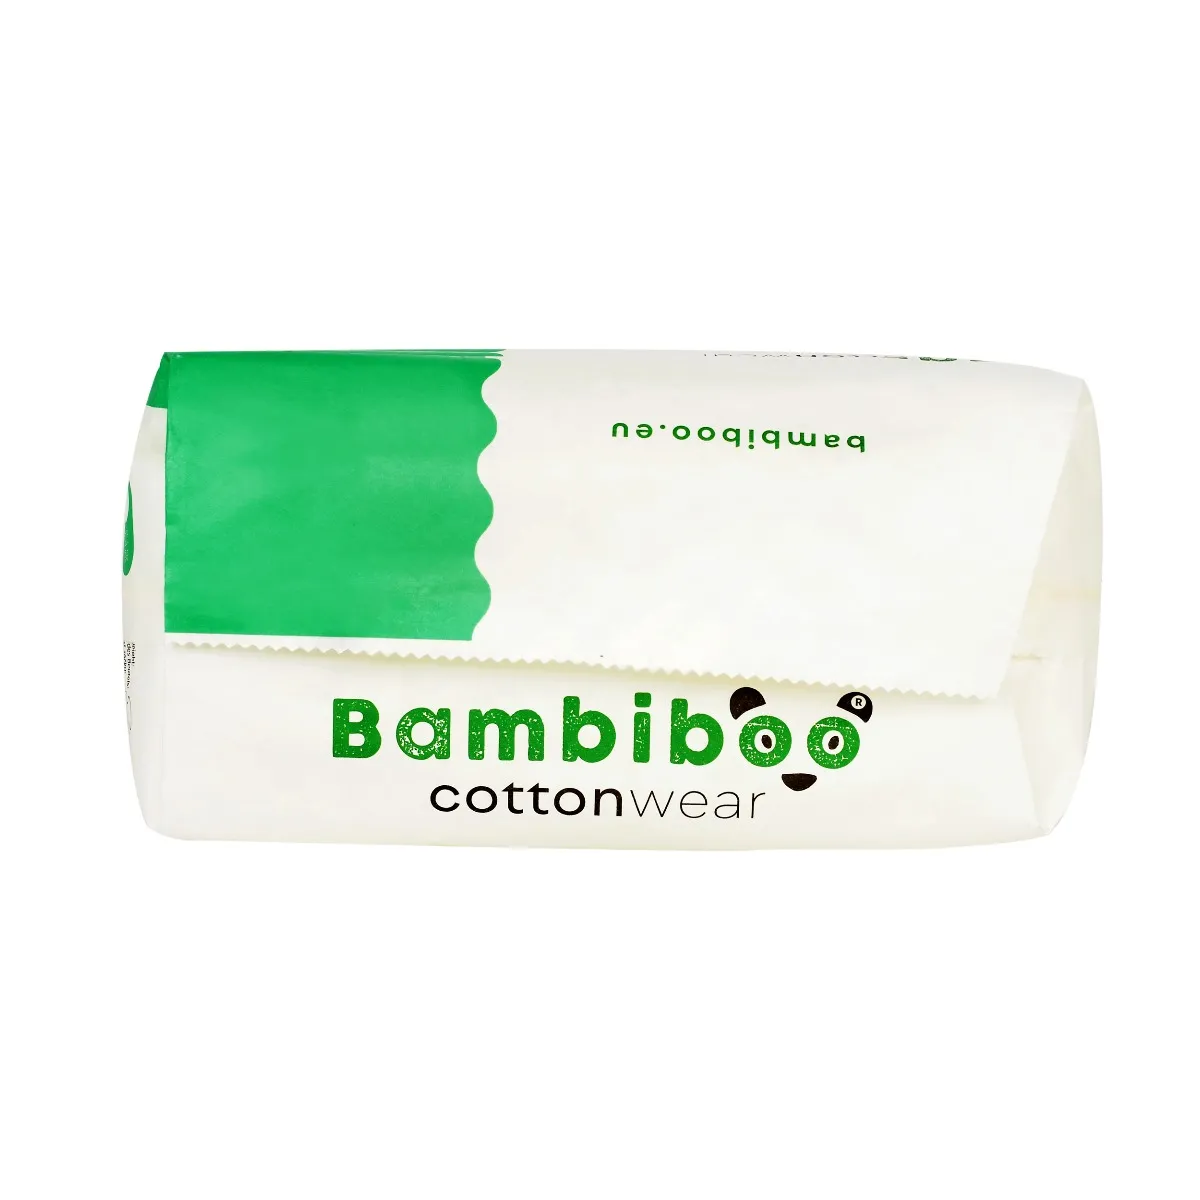 Bambiboo COTTONWEAR jednorazowe pieluszki z bawełną organiczną i wycięciem na pępek rozmiar 1, 28 szt. 